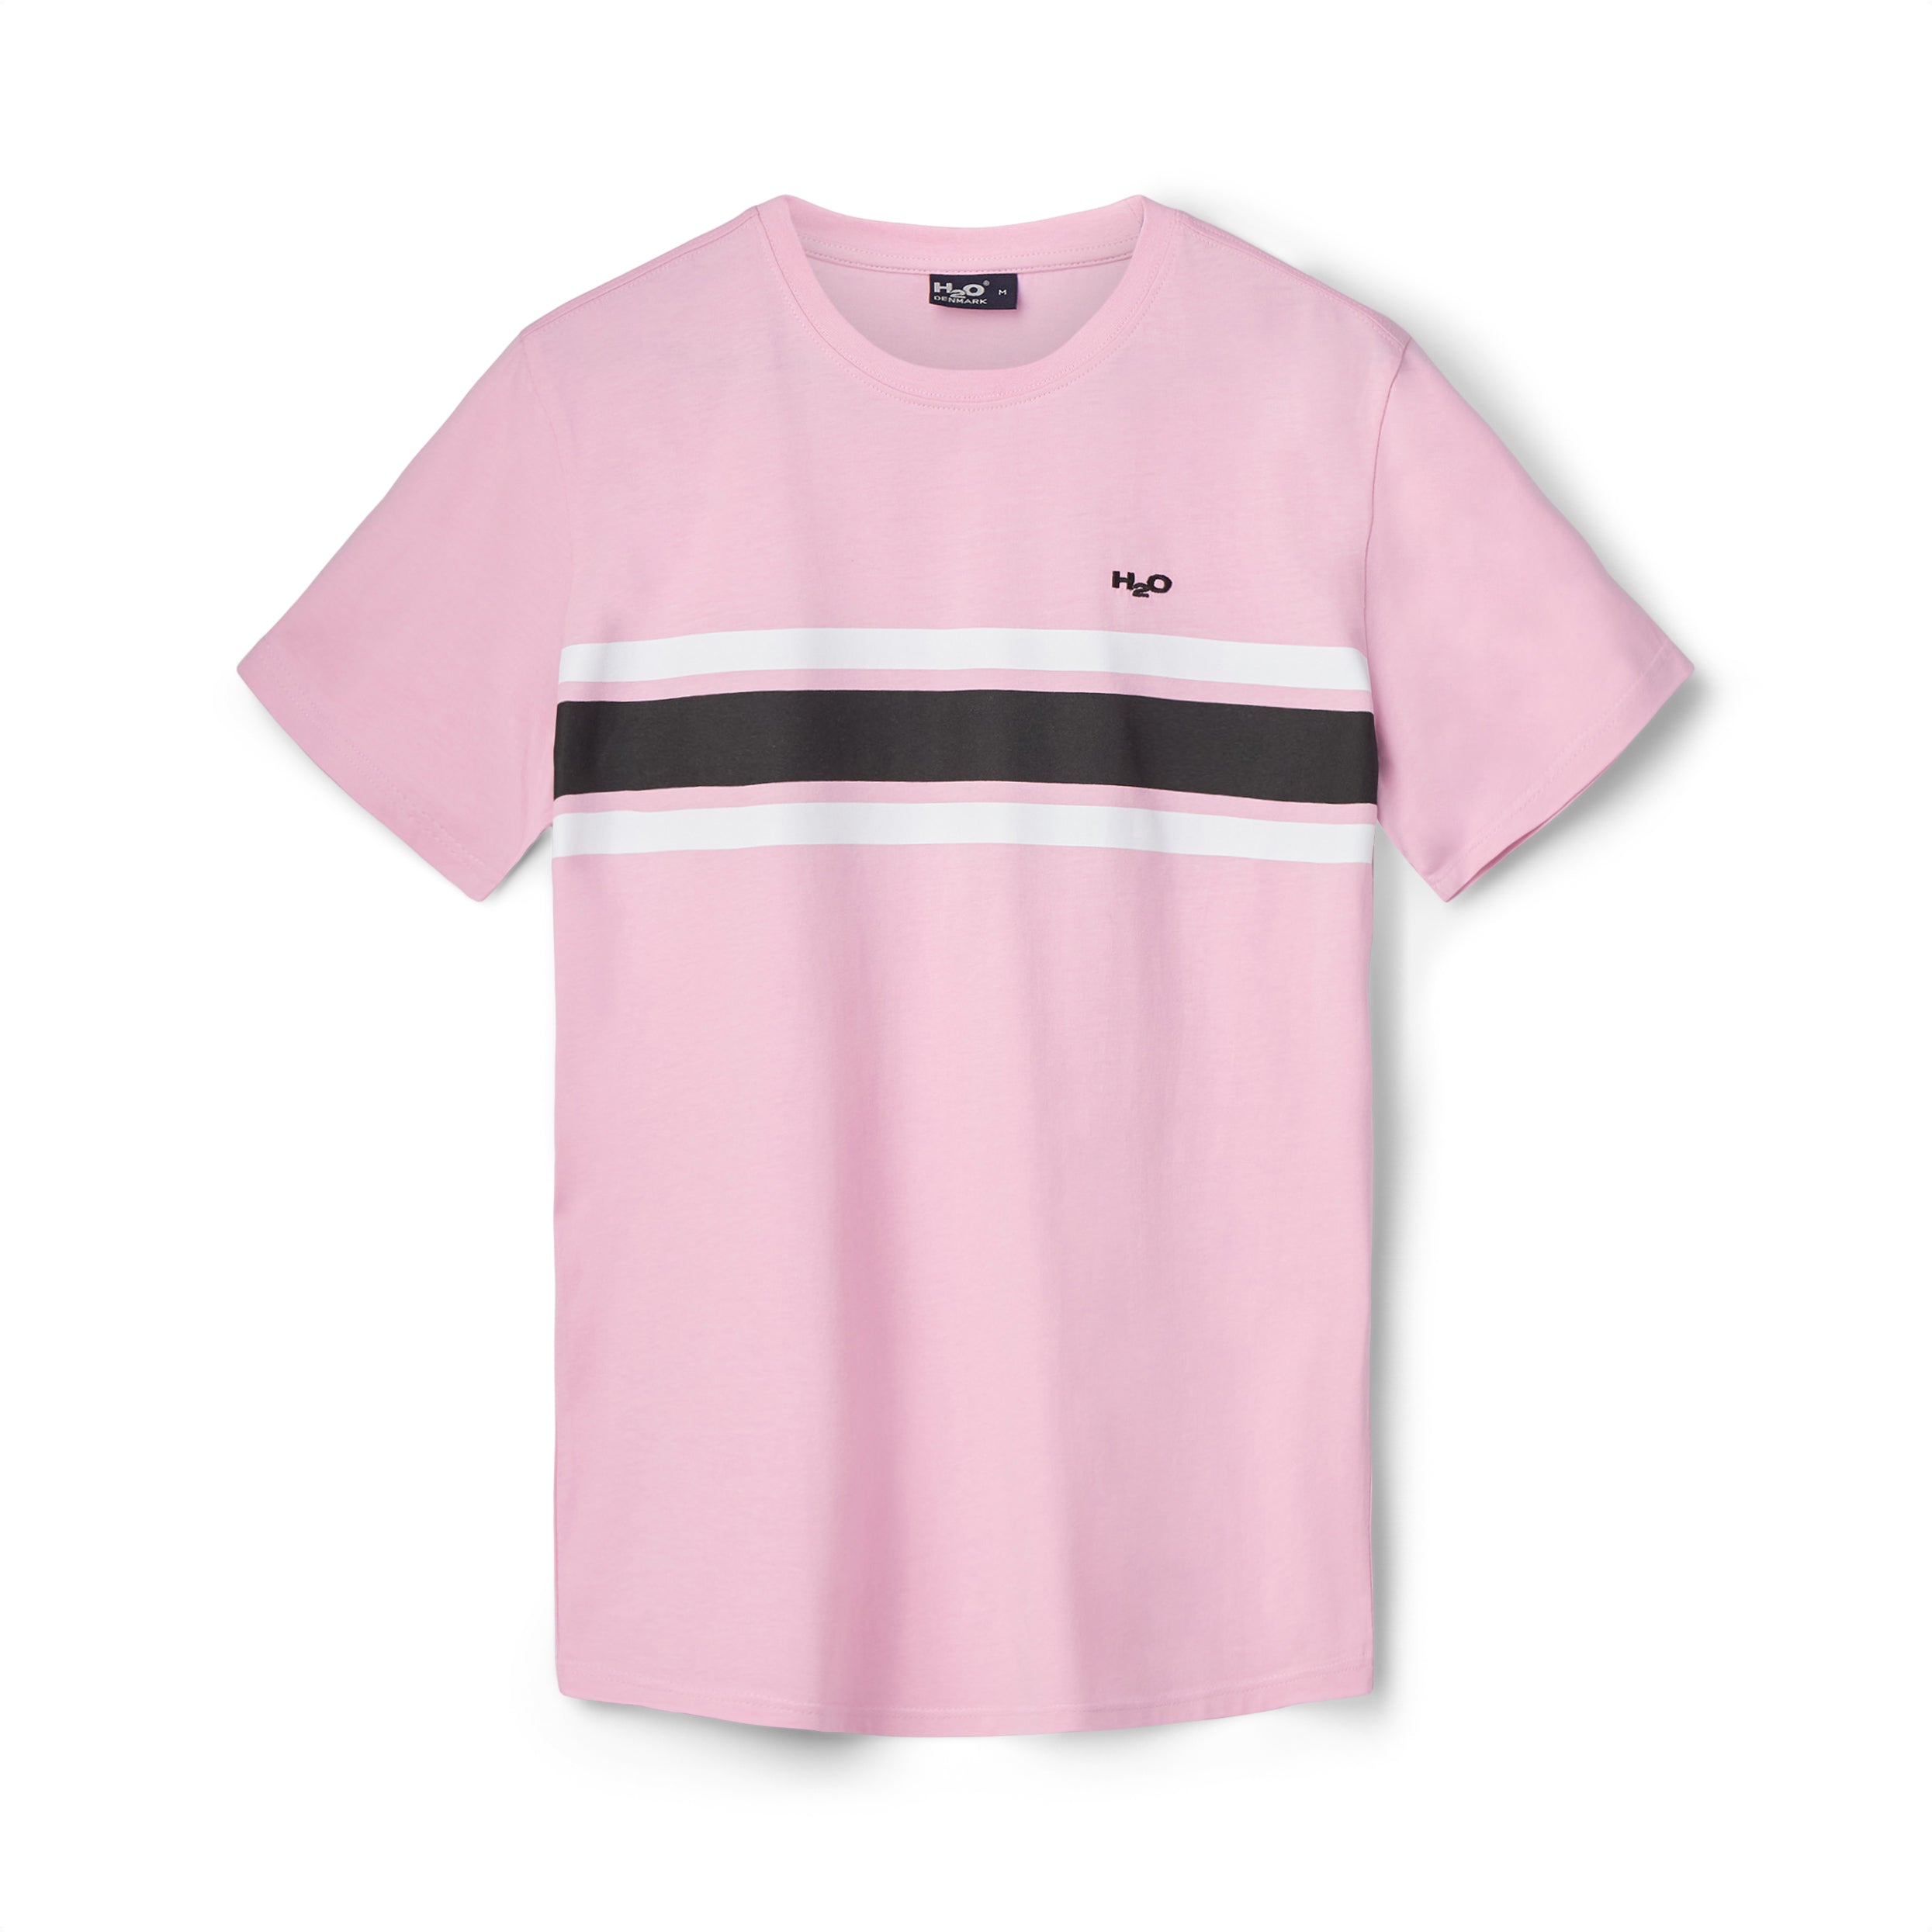 Gilleleje T-shirt - Pink Lavender/White/Black